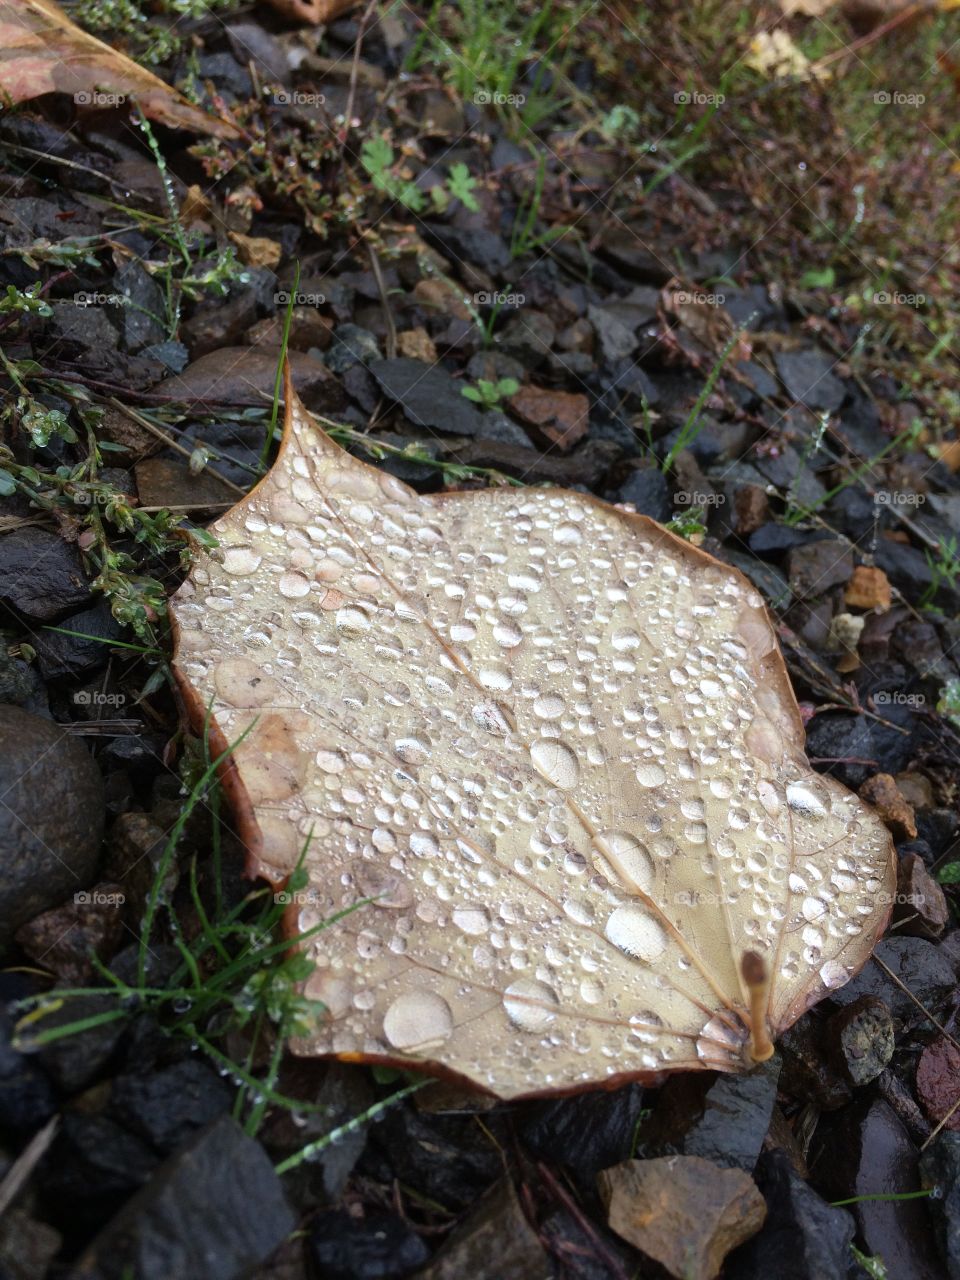 Morning dew on a fallen leaf